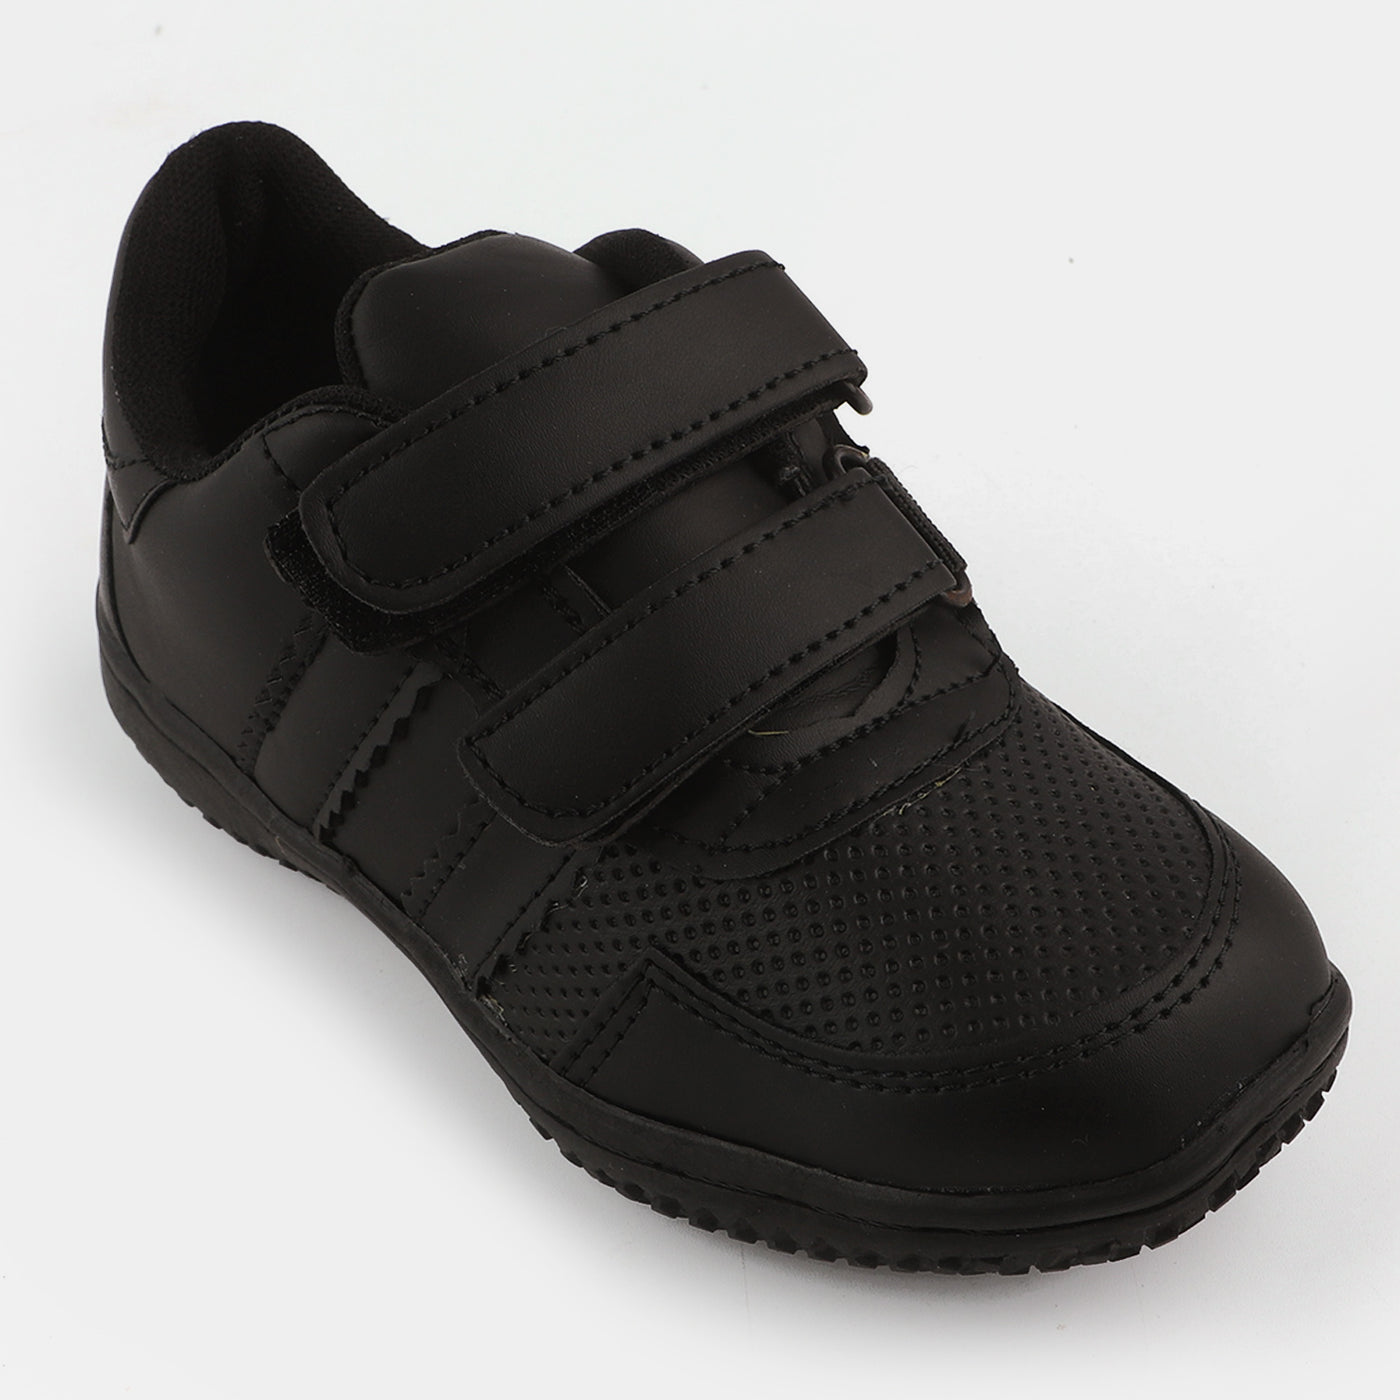 Boys School Shoes TS-Black